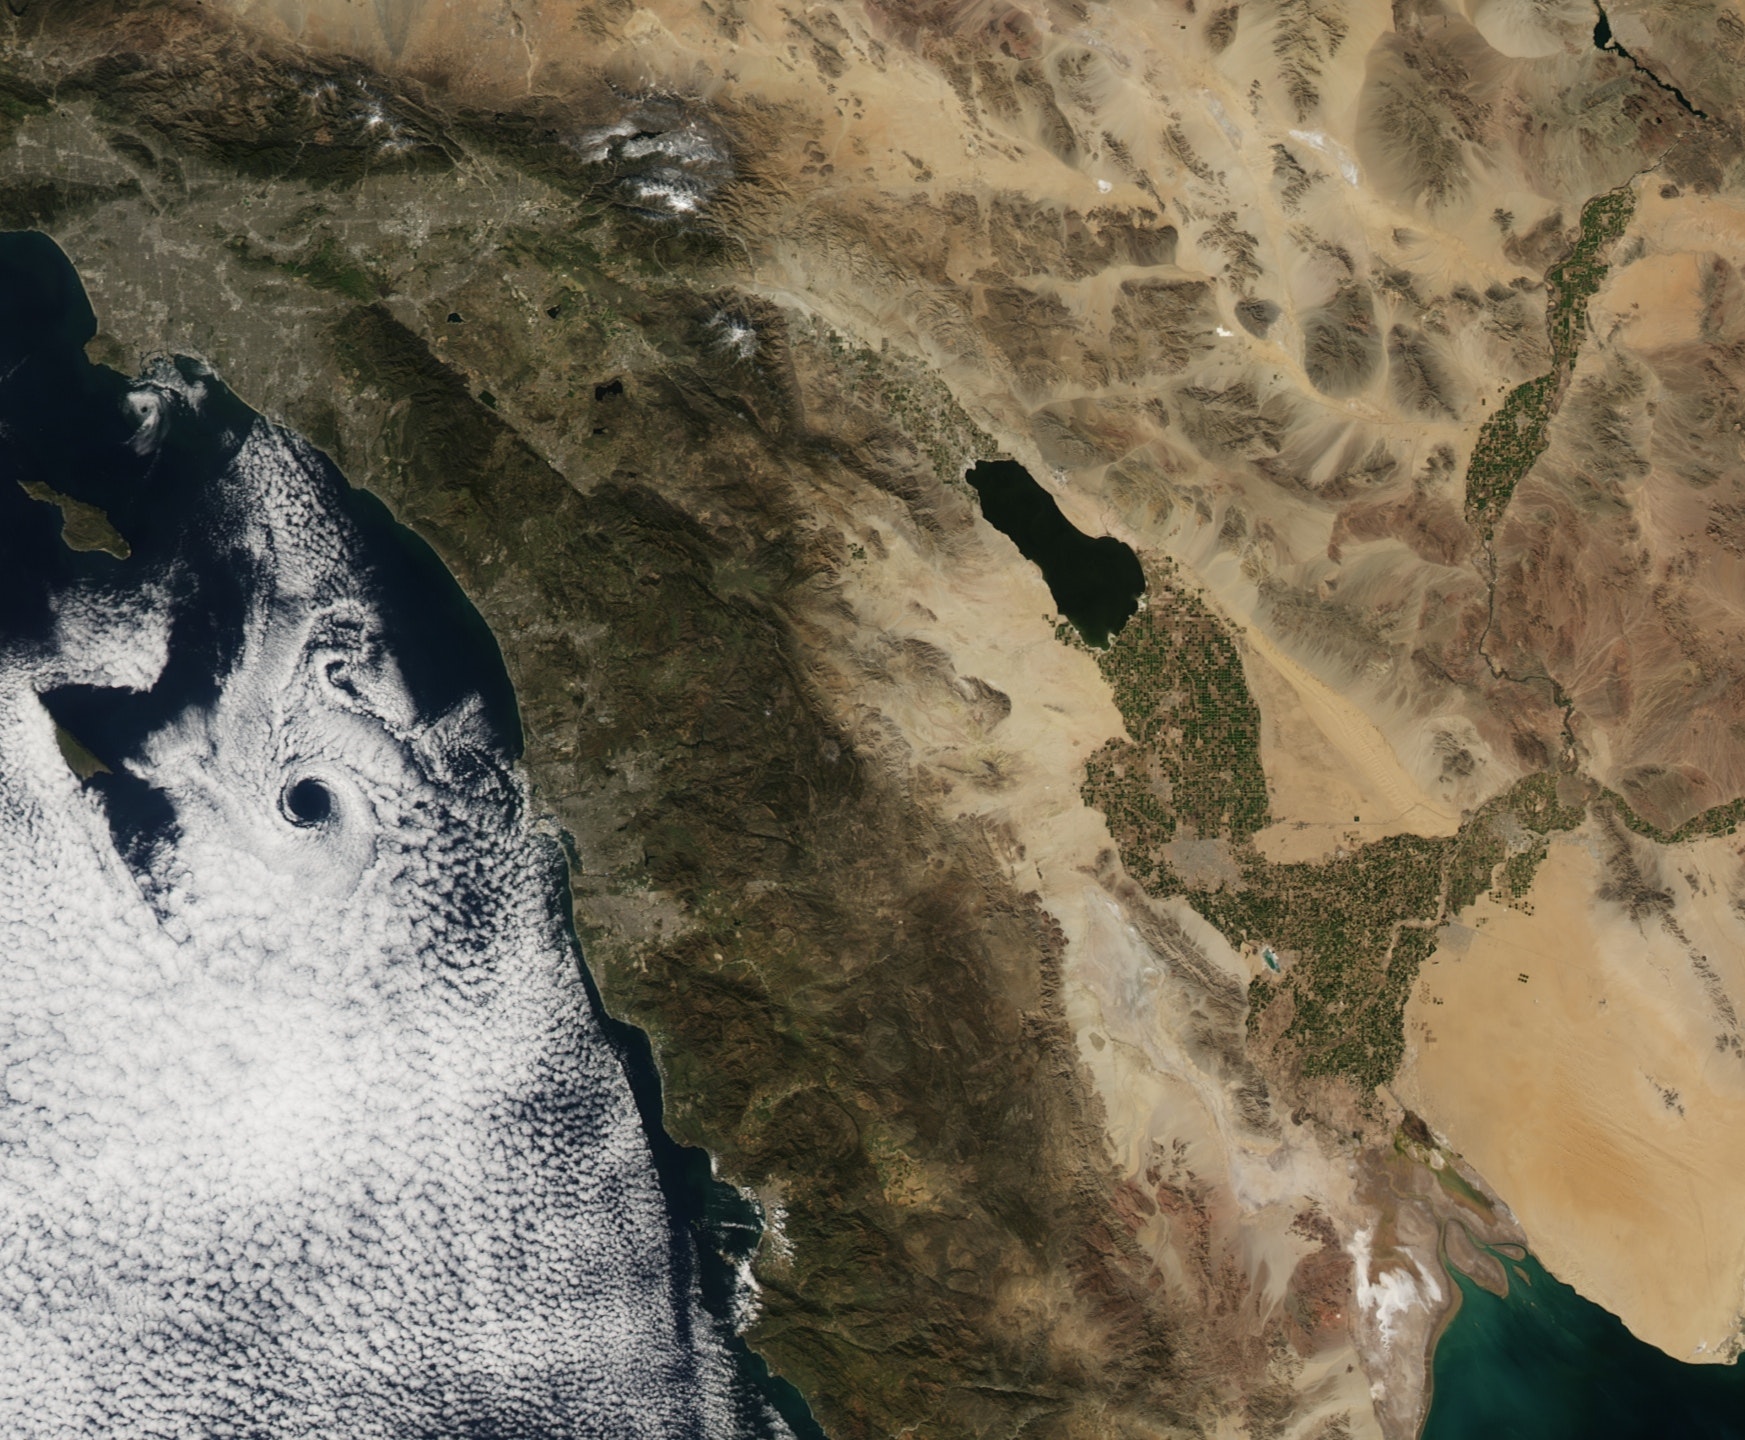 Image satellite de la mer de Salton montrant une large vallée